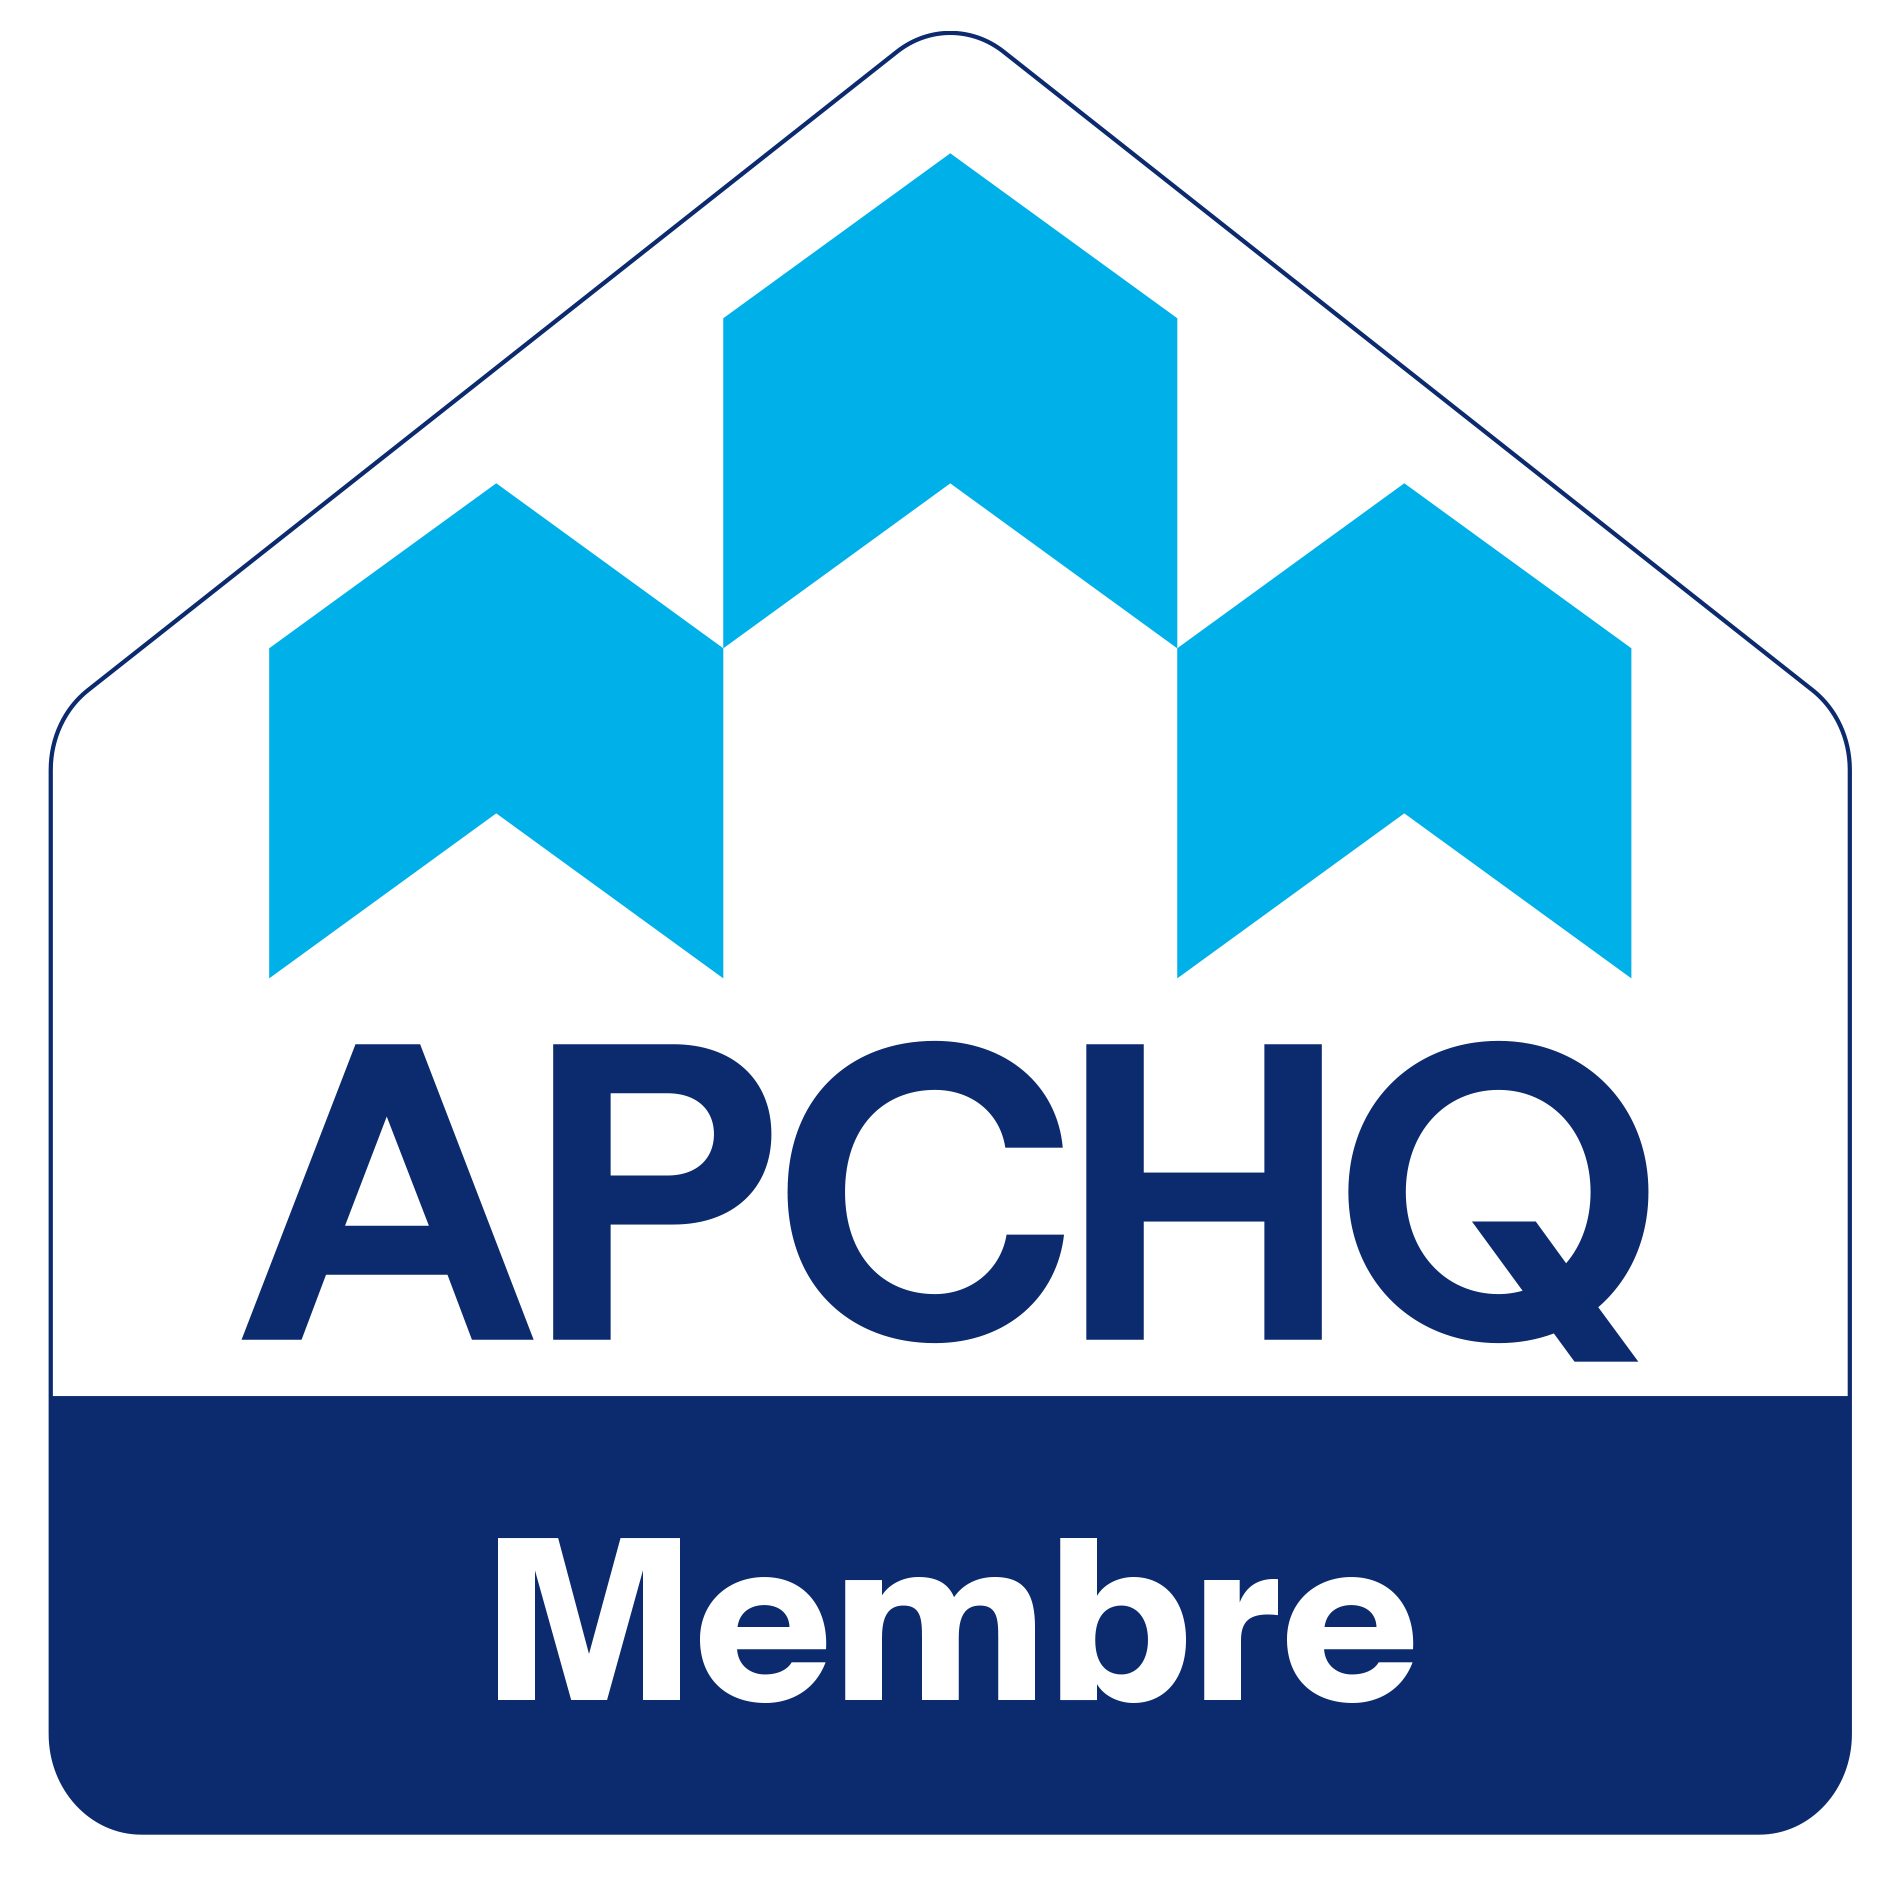 Un logo bleu et blanc pour les membres apchq.